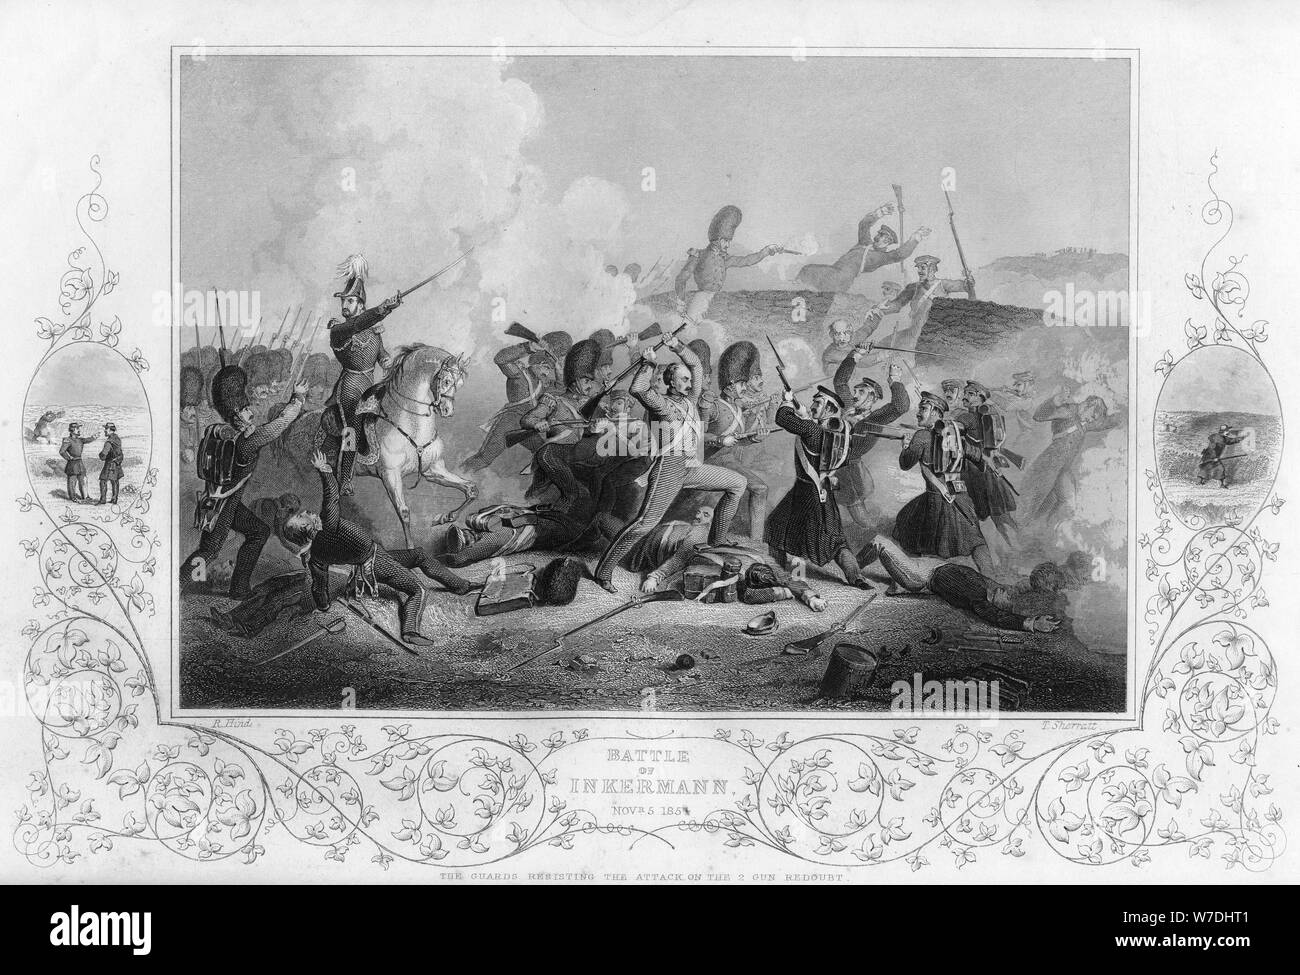 La batalla de Inkerman durante la Guerra de Crimea, 1854 (1857).Artista: T Sherratt Foto de stock